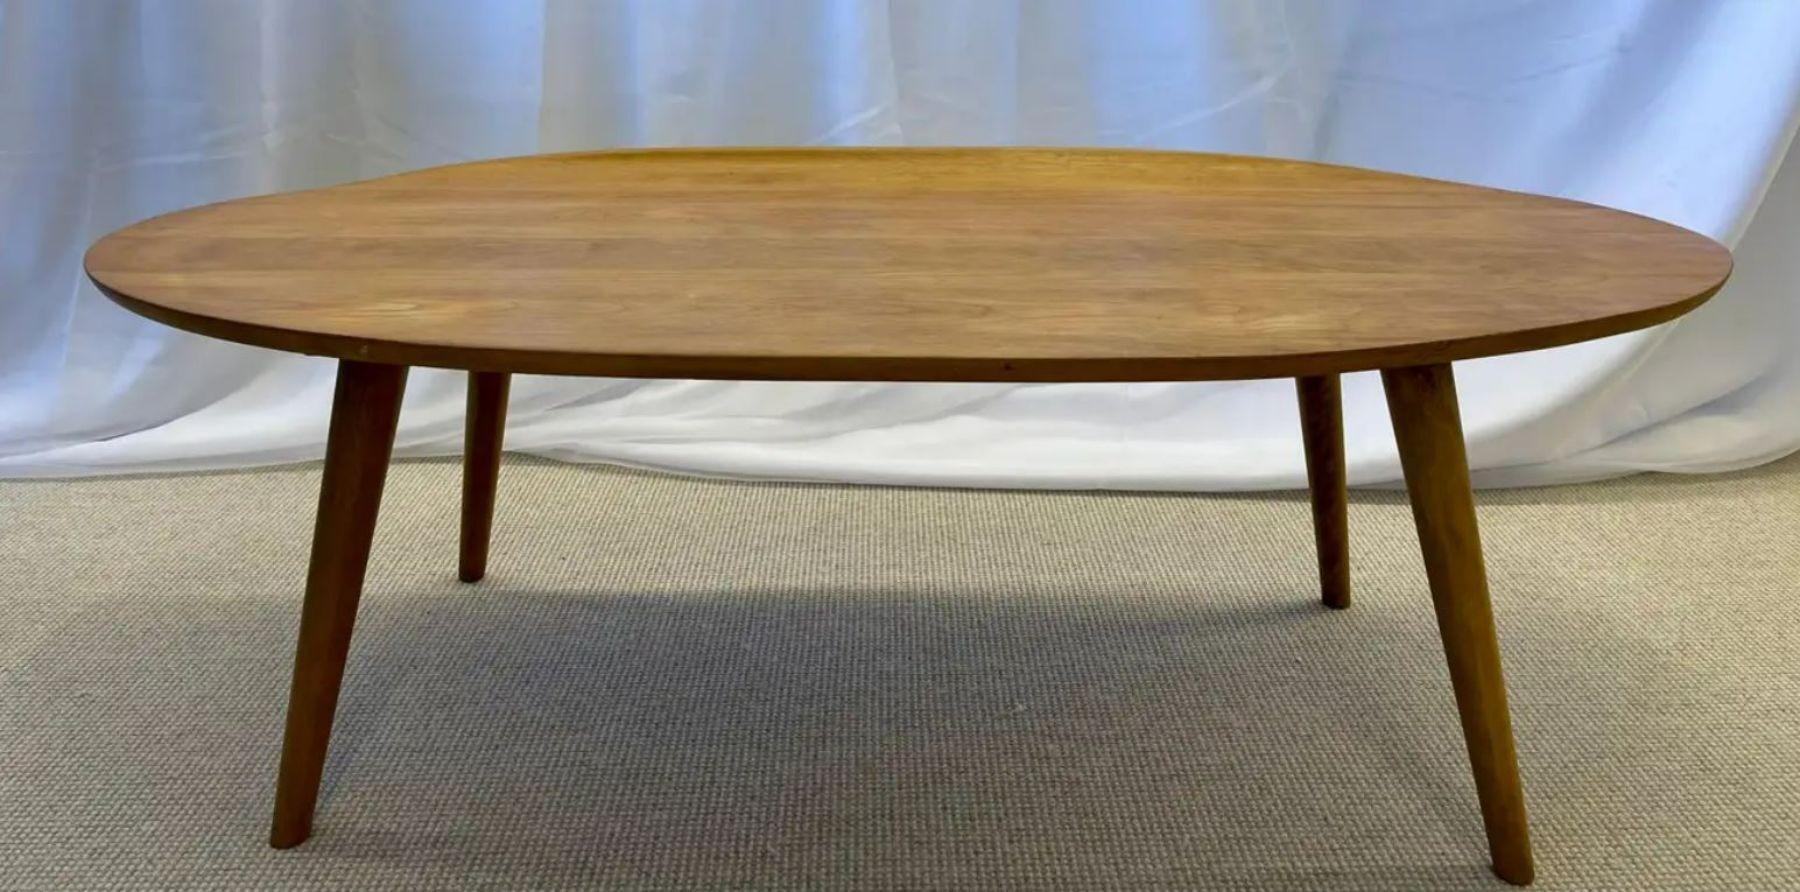 Table basse à boule By Design/One de style moderne du milieu du siècle, conçue par Russel Wright. La table basse elliptique à bord incurvé est un exemple élégant du travail de ce designer dans un érable grainé. USA, c. 1955 Marque de fabricant